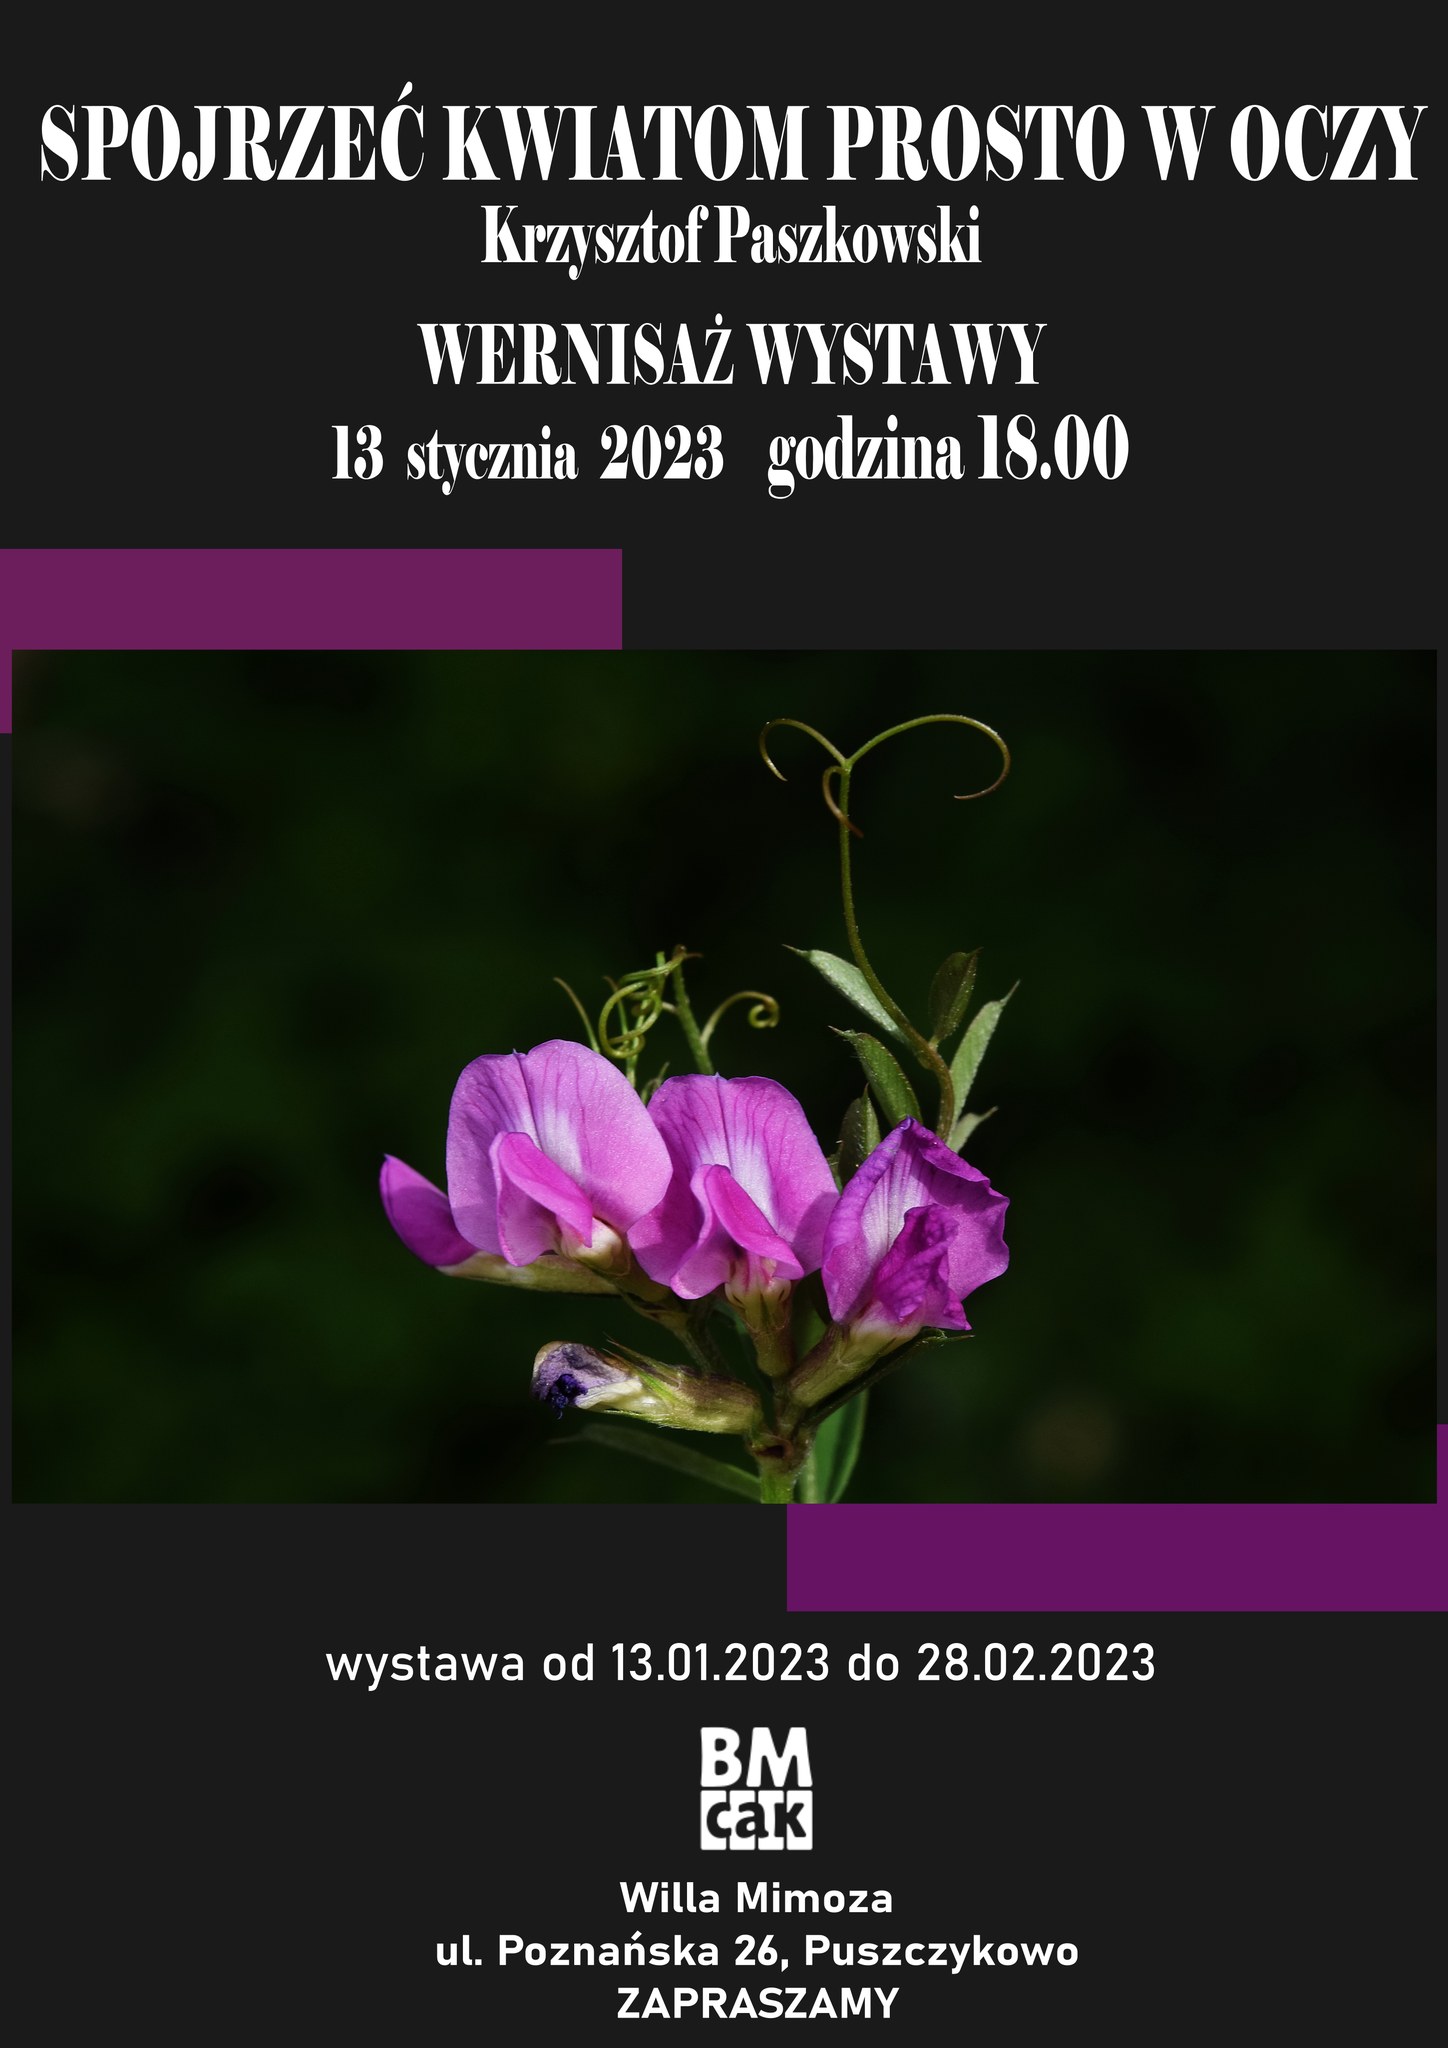 Zapraszamy na wernisaż wystawy Krzysztofa Paszkowskiego pn. "Spojrzeć kwiatom prosto w oczy".